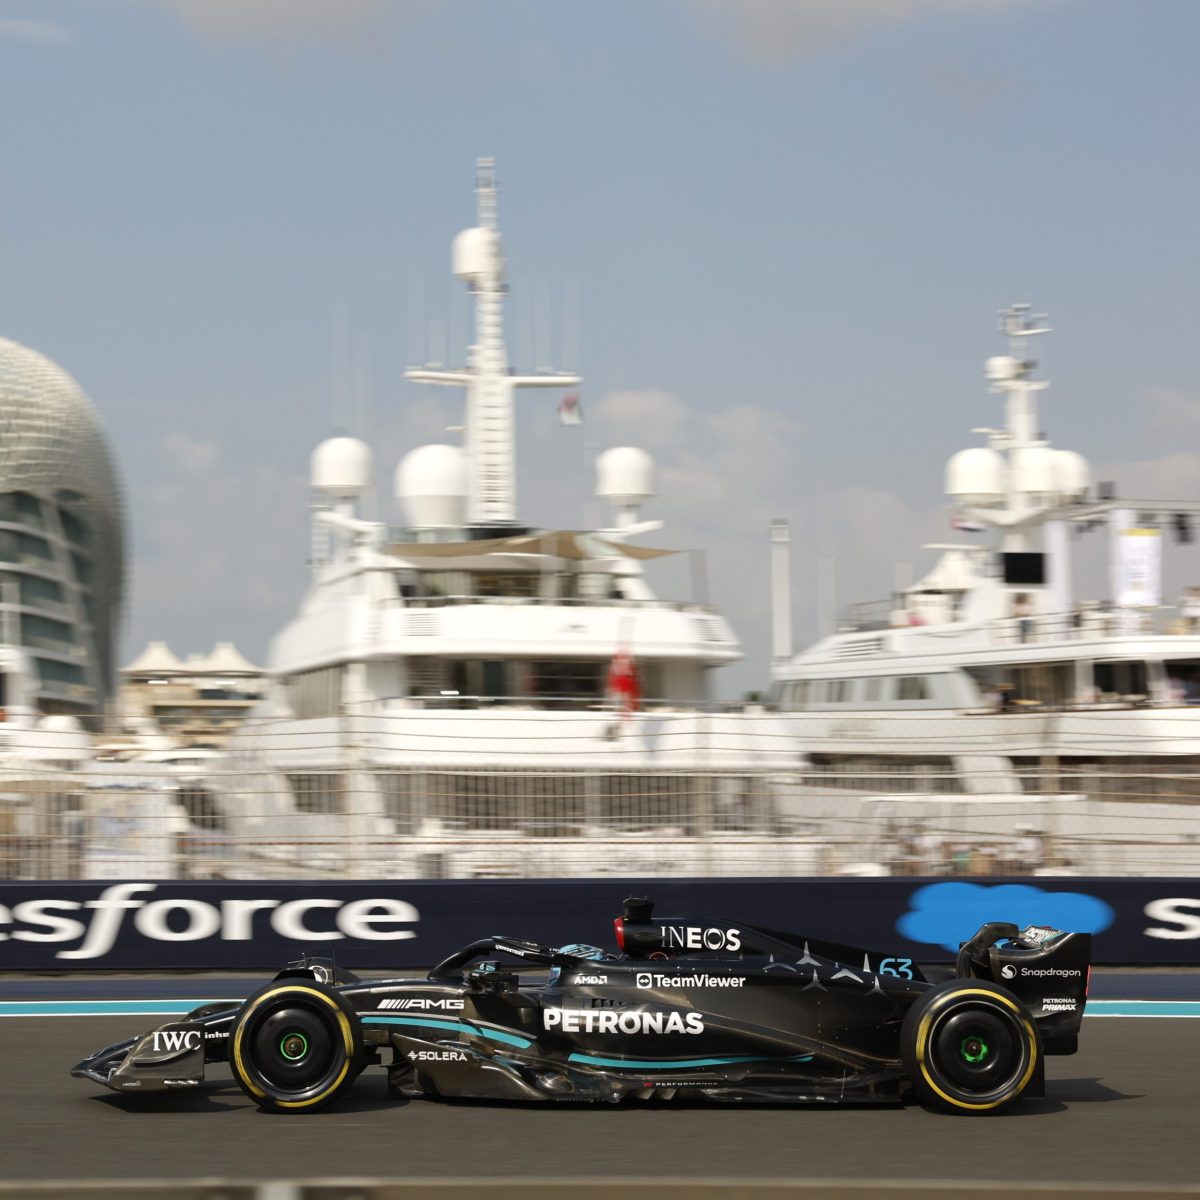 Russell lidera la FP1 llena de novatos y sin campeones de F1 en Abu Dhabi. Drugovich es 2º